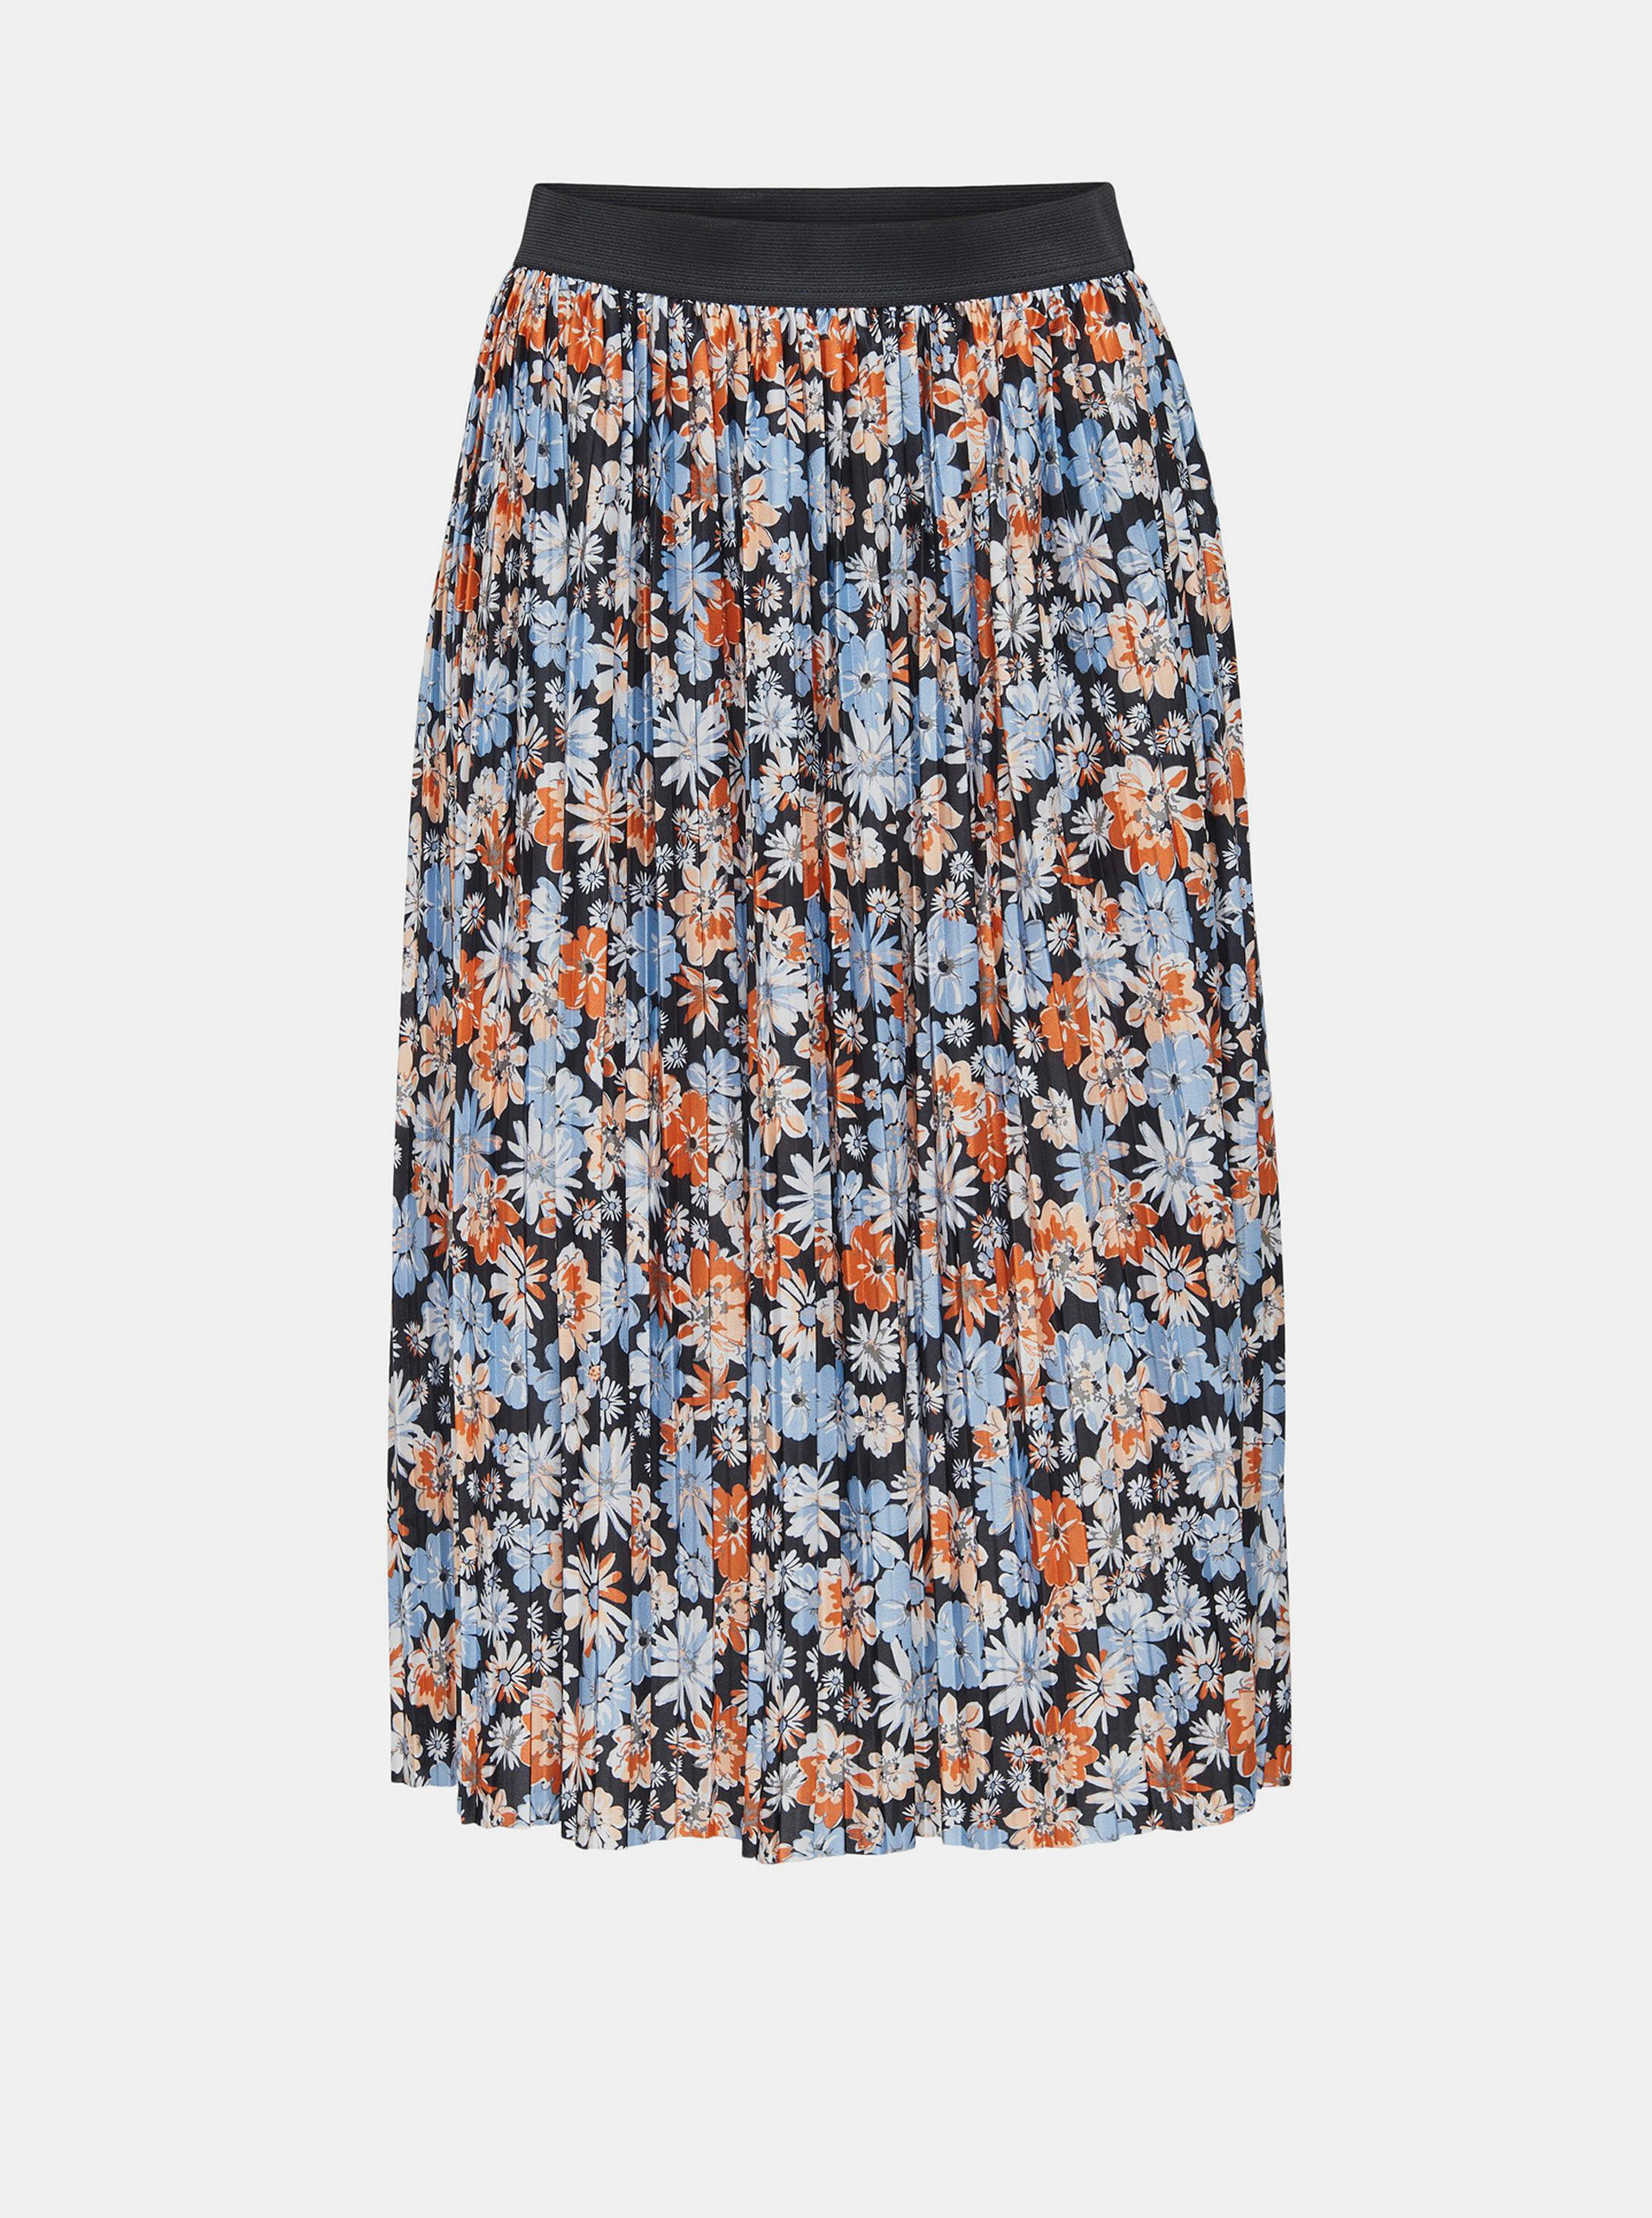 Fotografie Oranžovo-modrá květovaná plisovaná sukně Jacqueline de Yong Boa